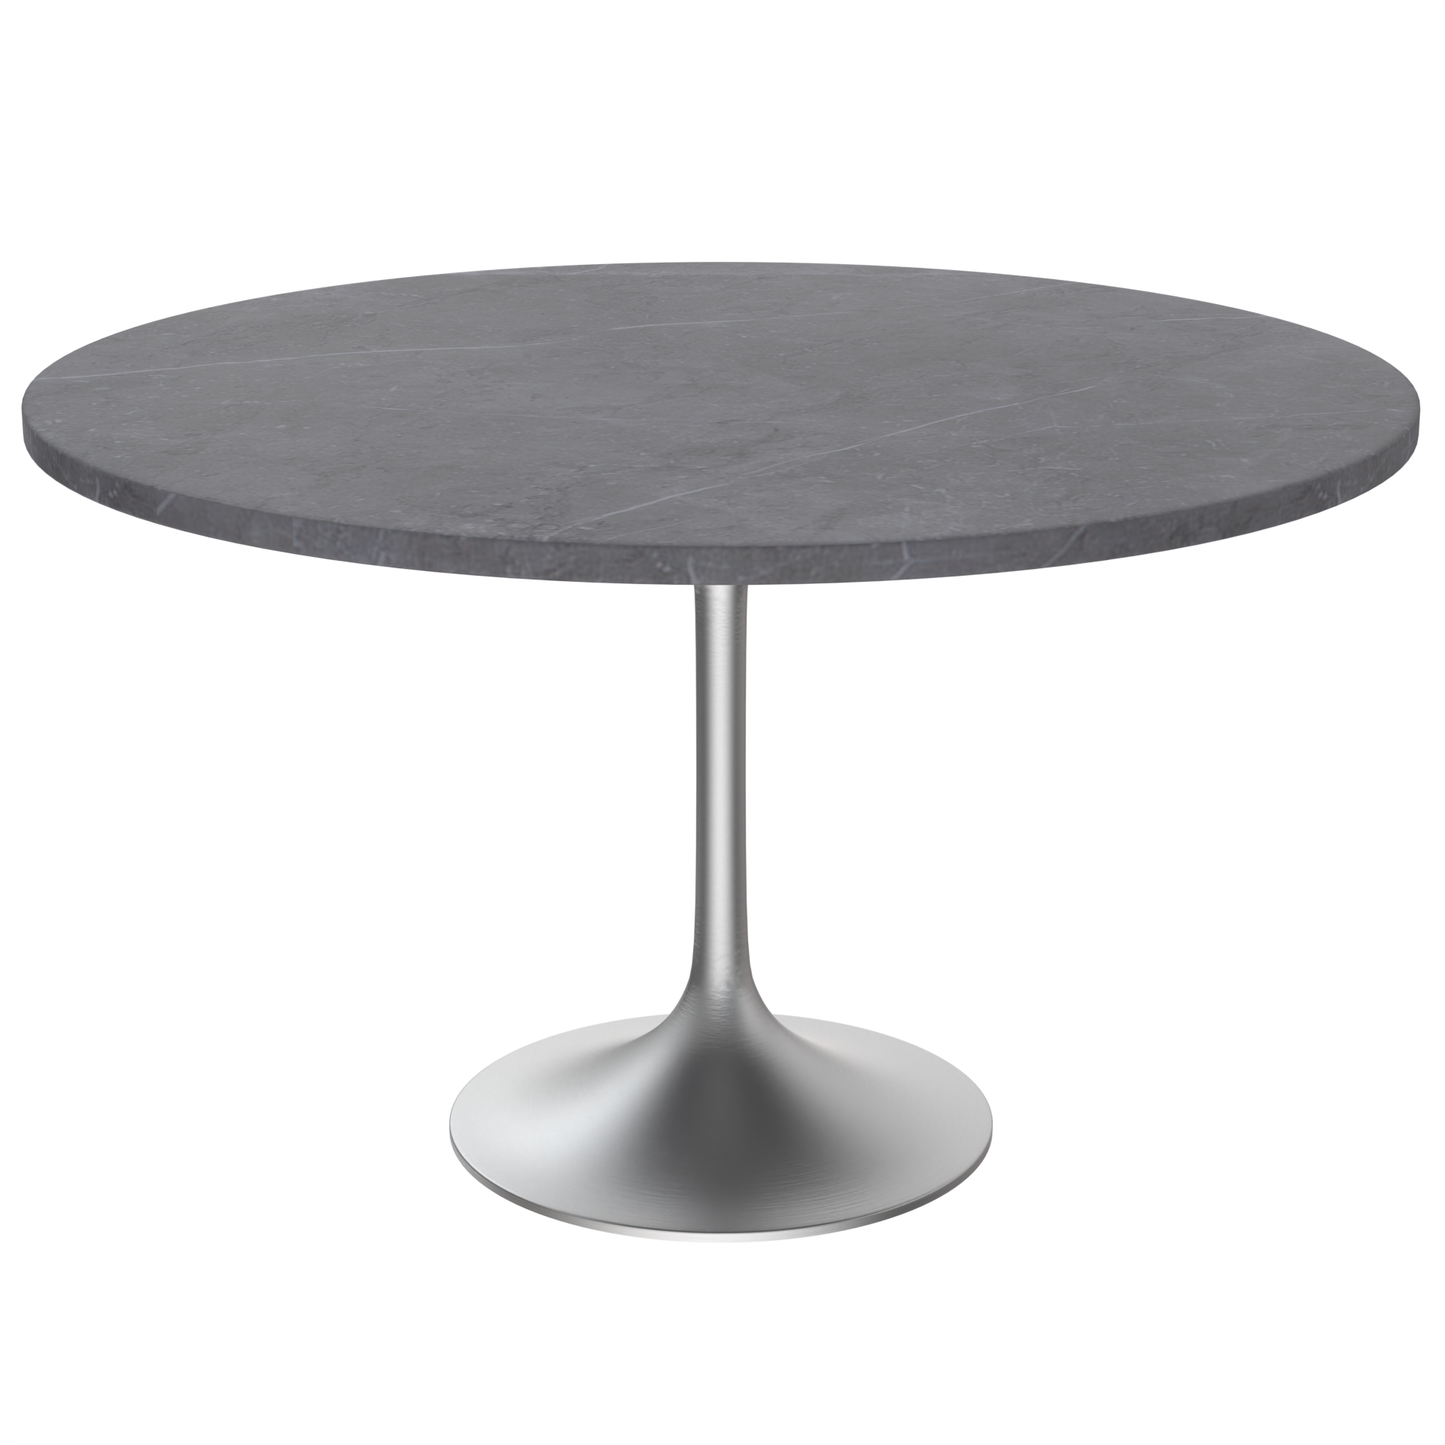 Vera 48" Round Dining Table - Brushed Chrome Base